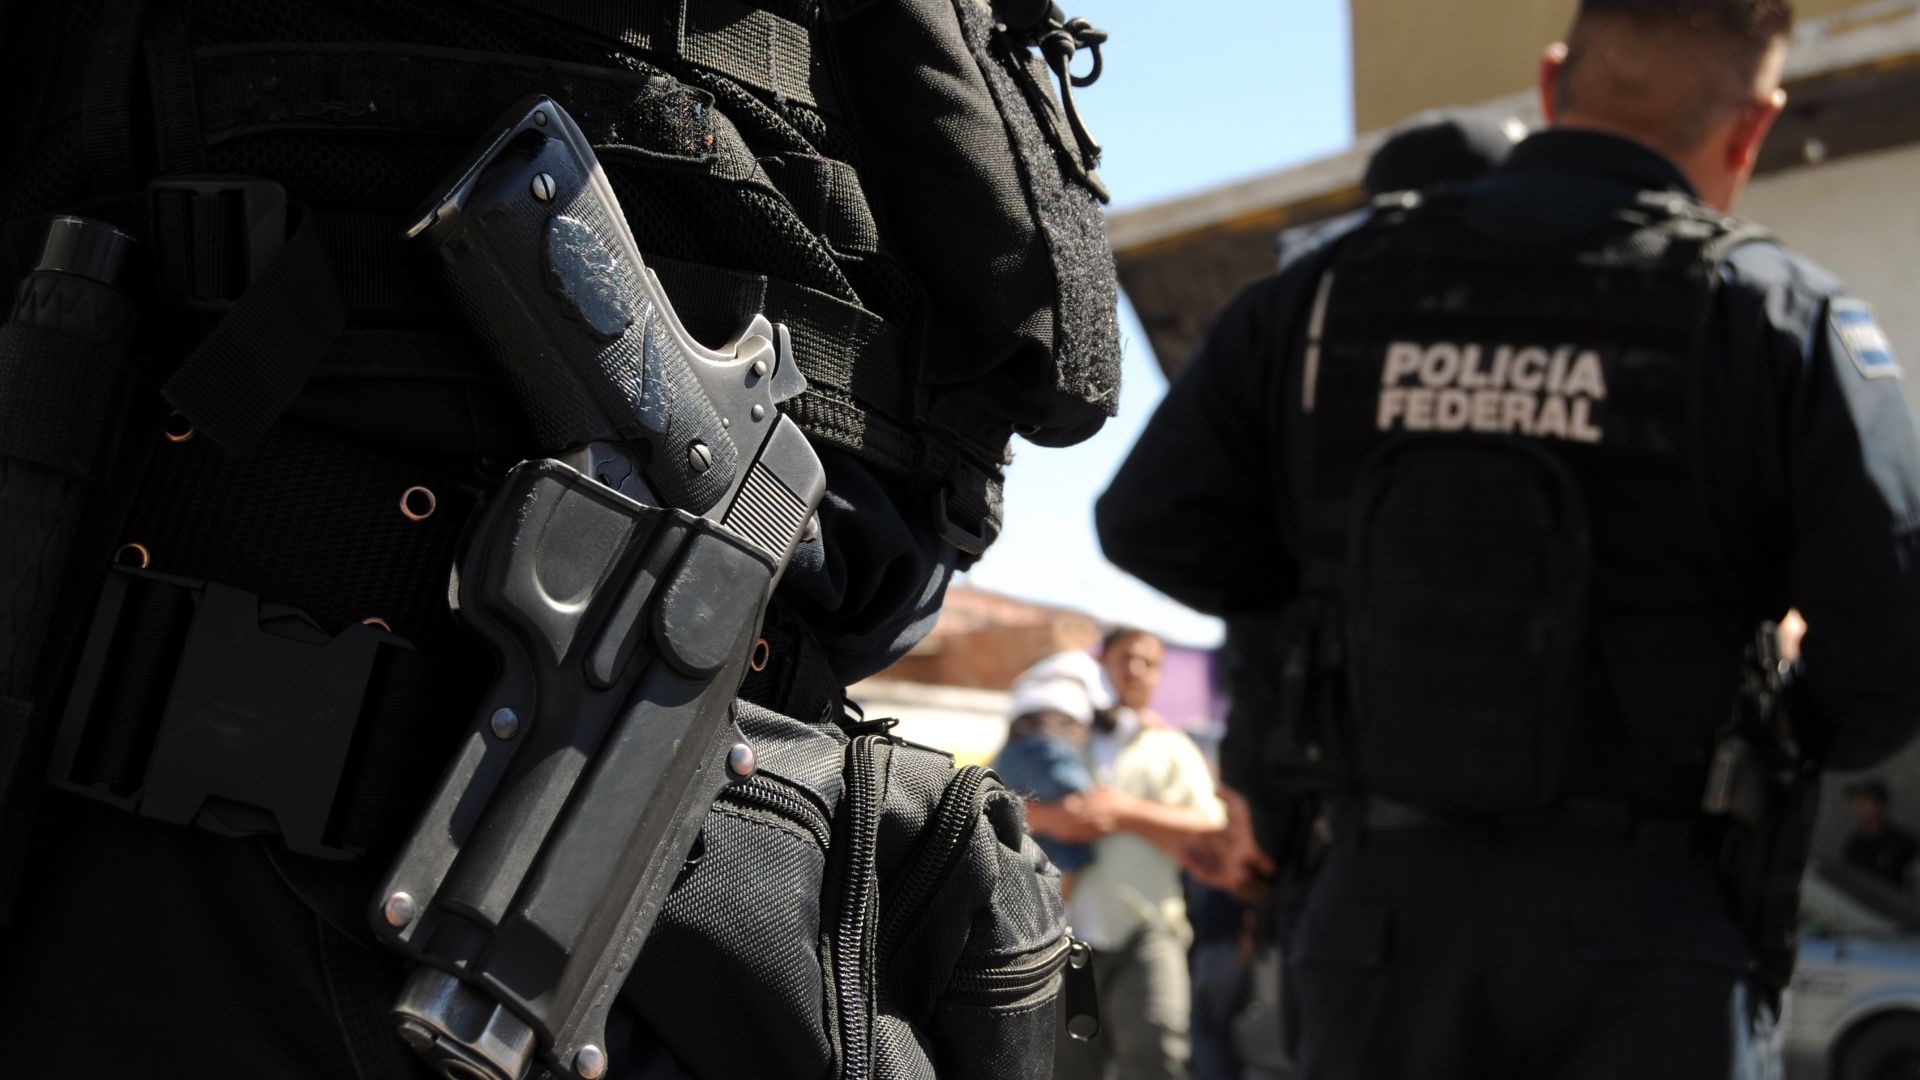 Двама мексиканци арестувани в предградие на столицата Мексико докато пренасяли